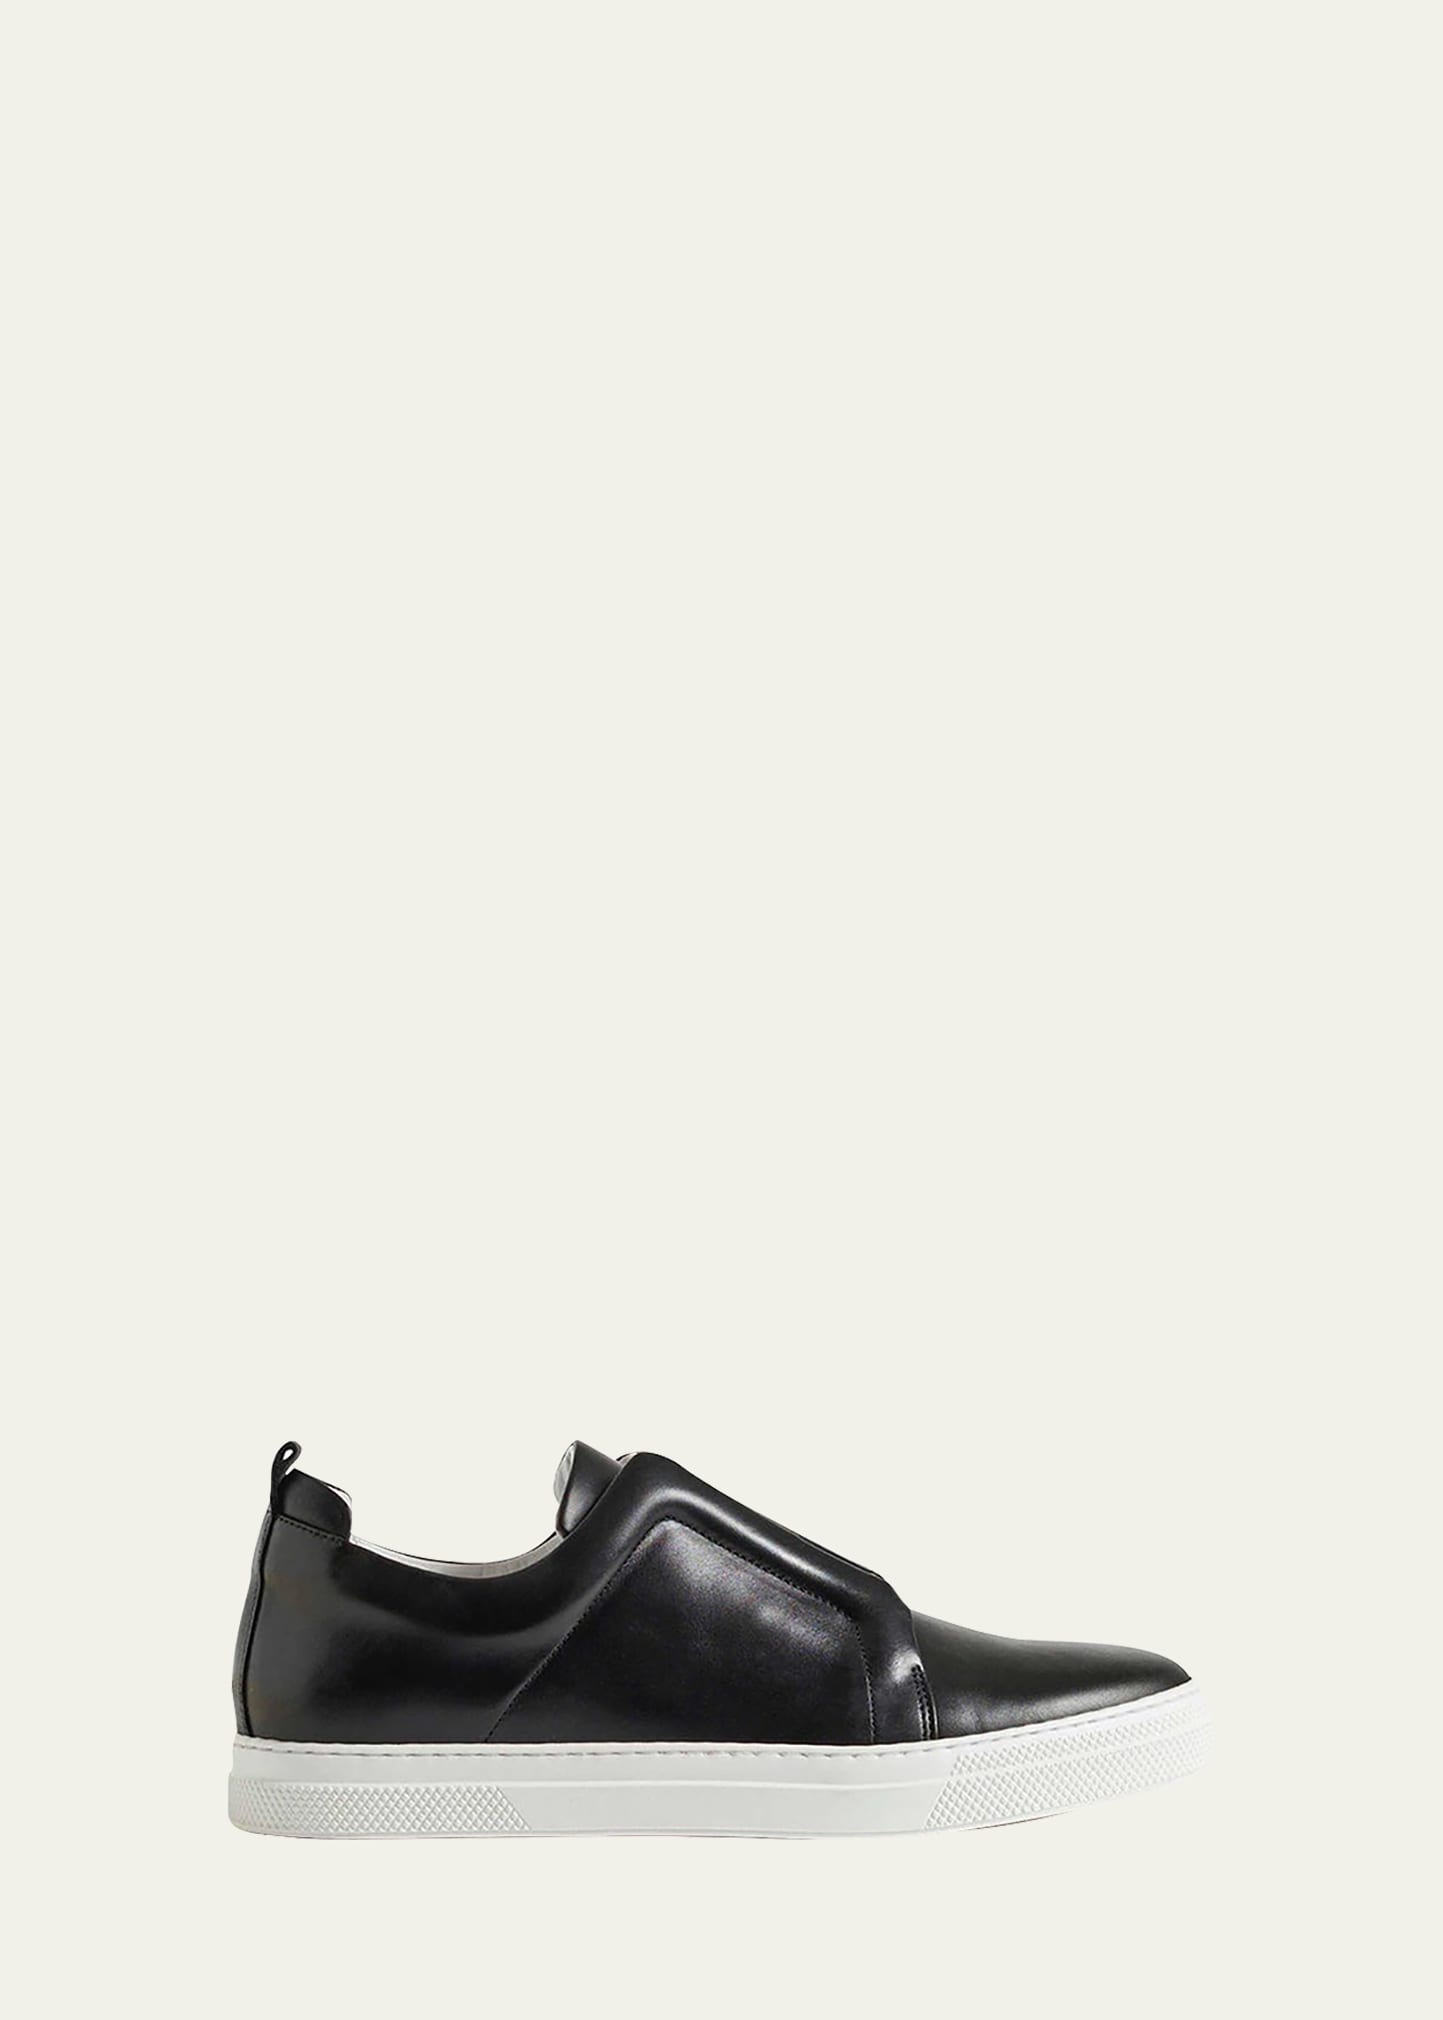 Designer Shoes : Heels & Pumps at Bergdorf Goodman